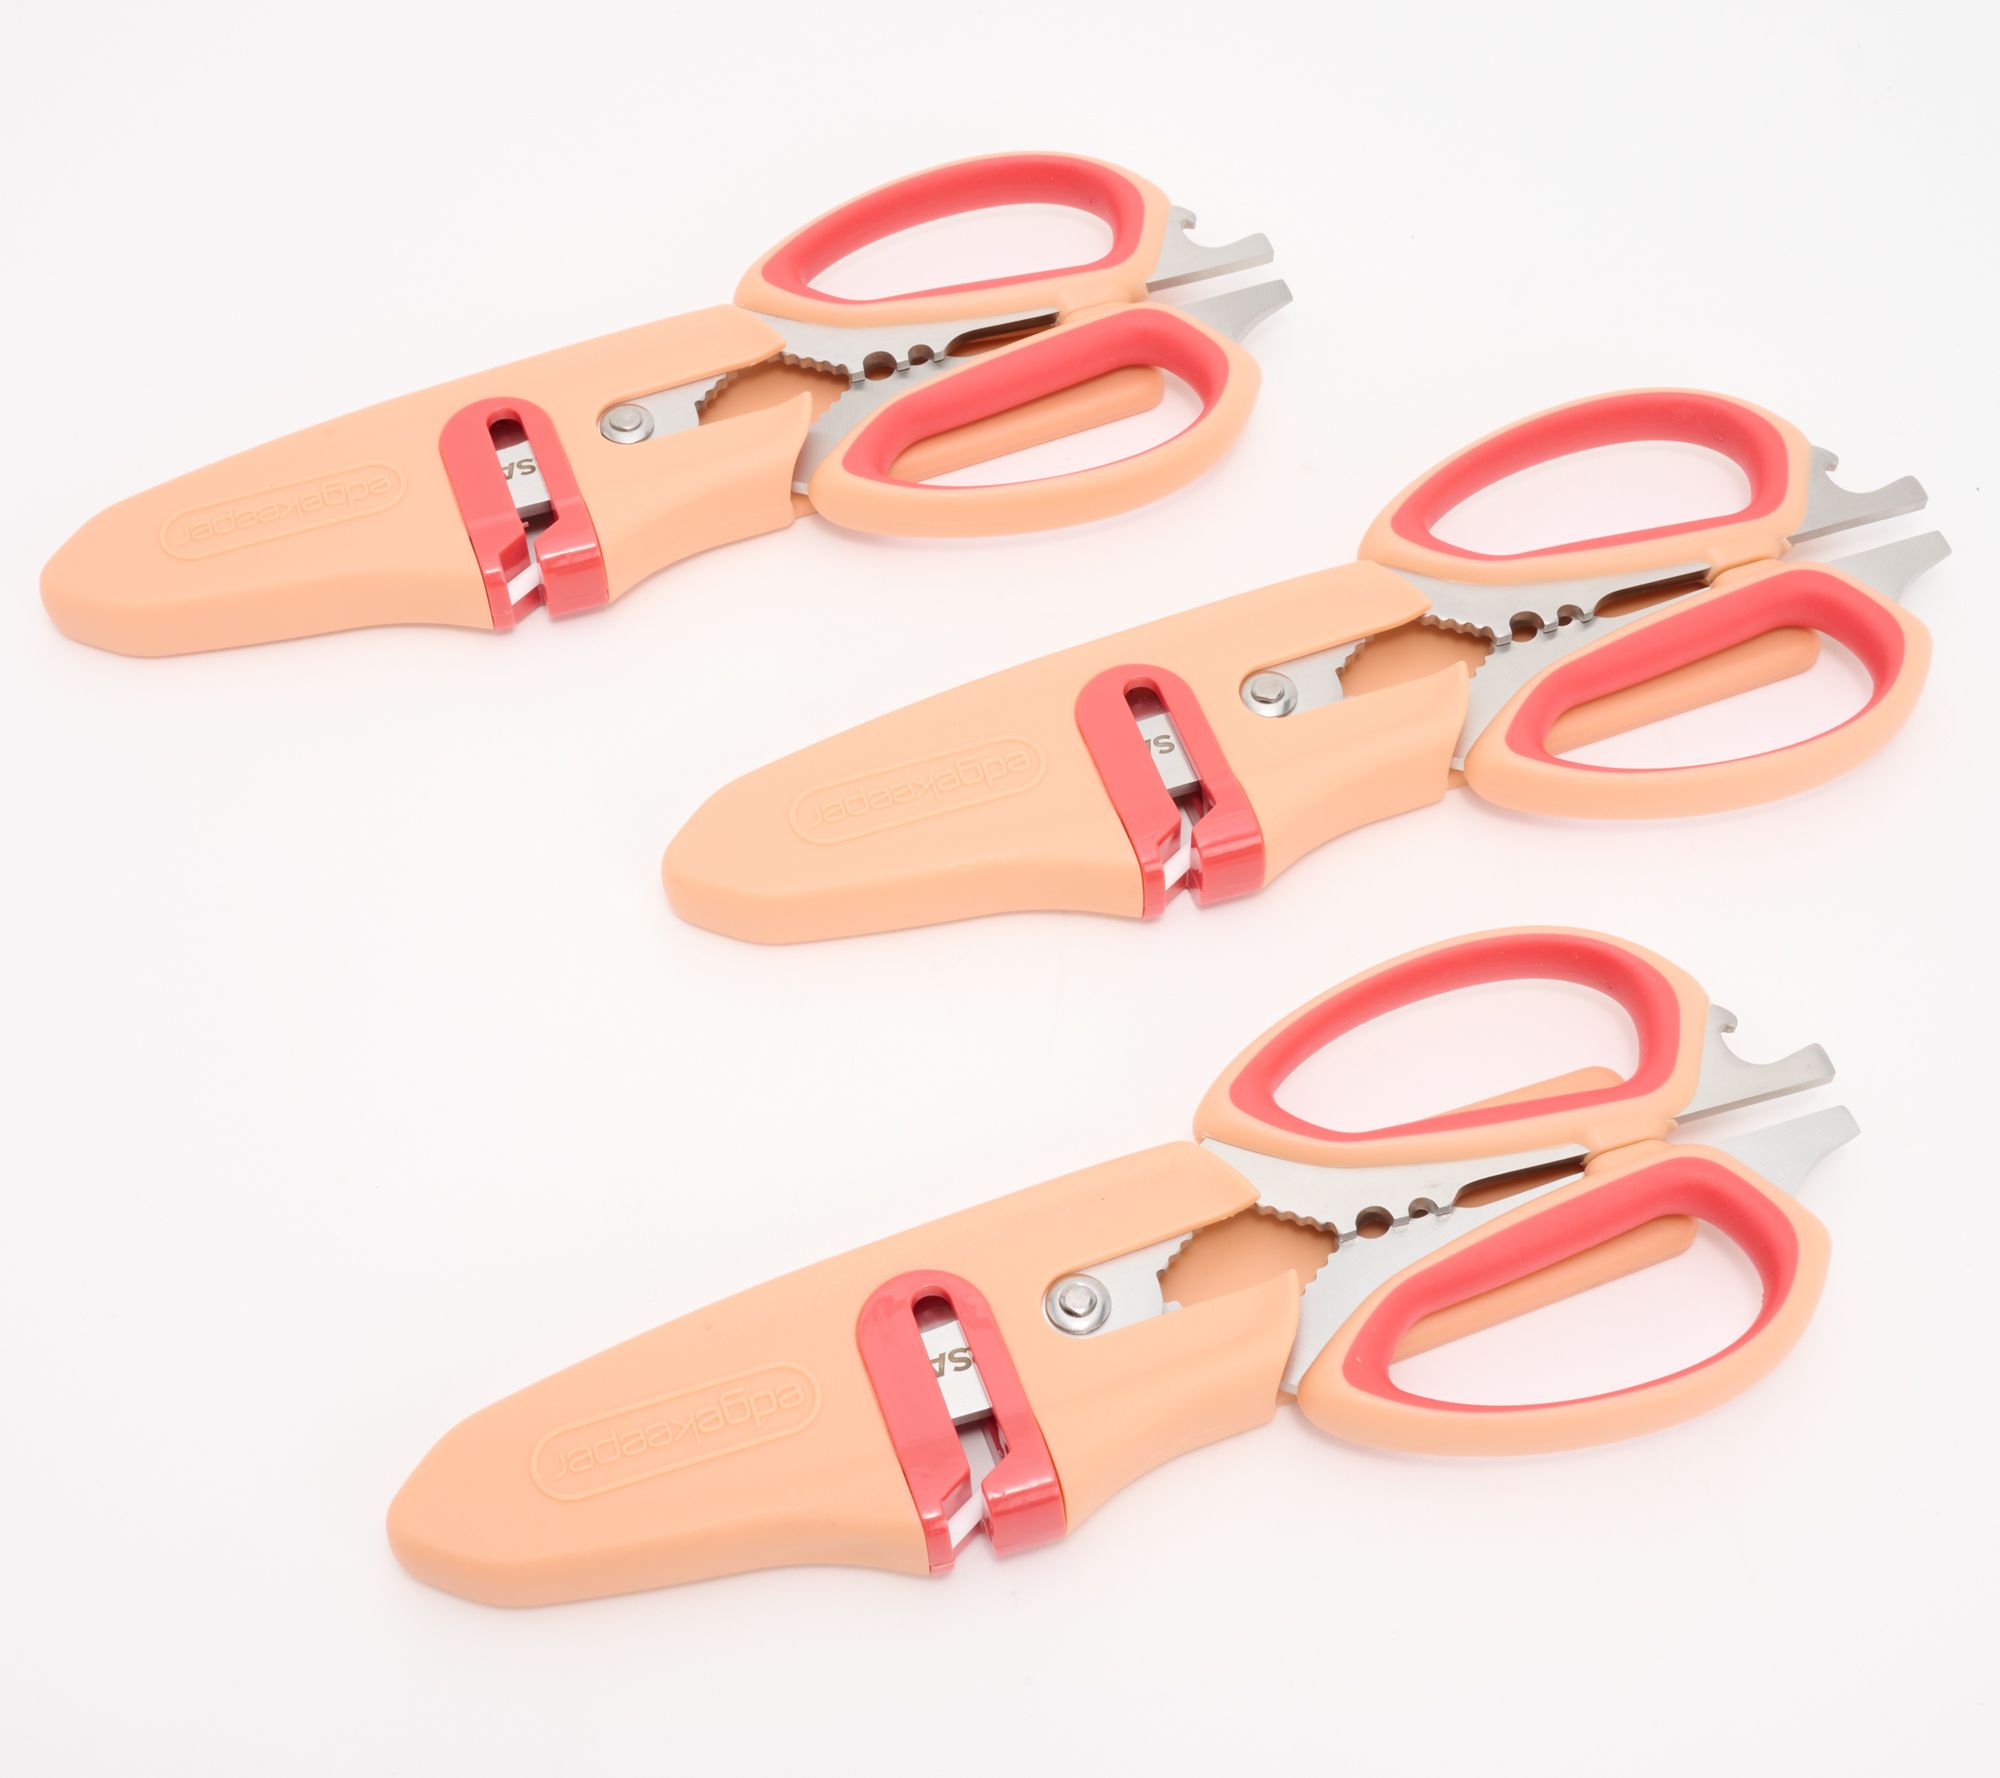 Sabatier 10-in-1 Multi-Purpose Scissors with Sheath NICE !!